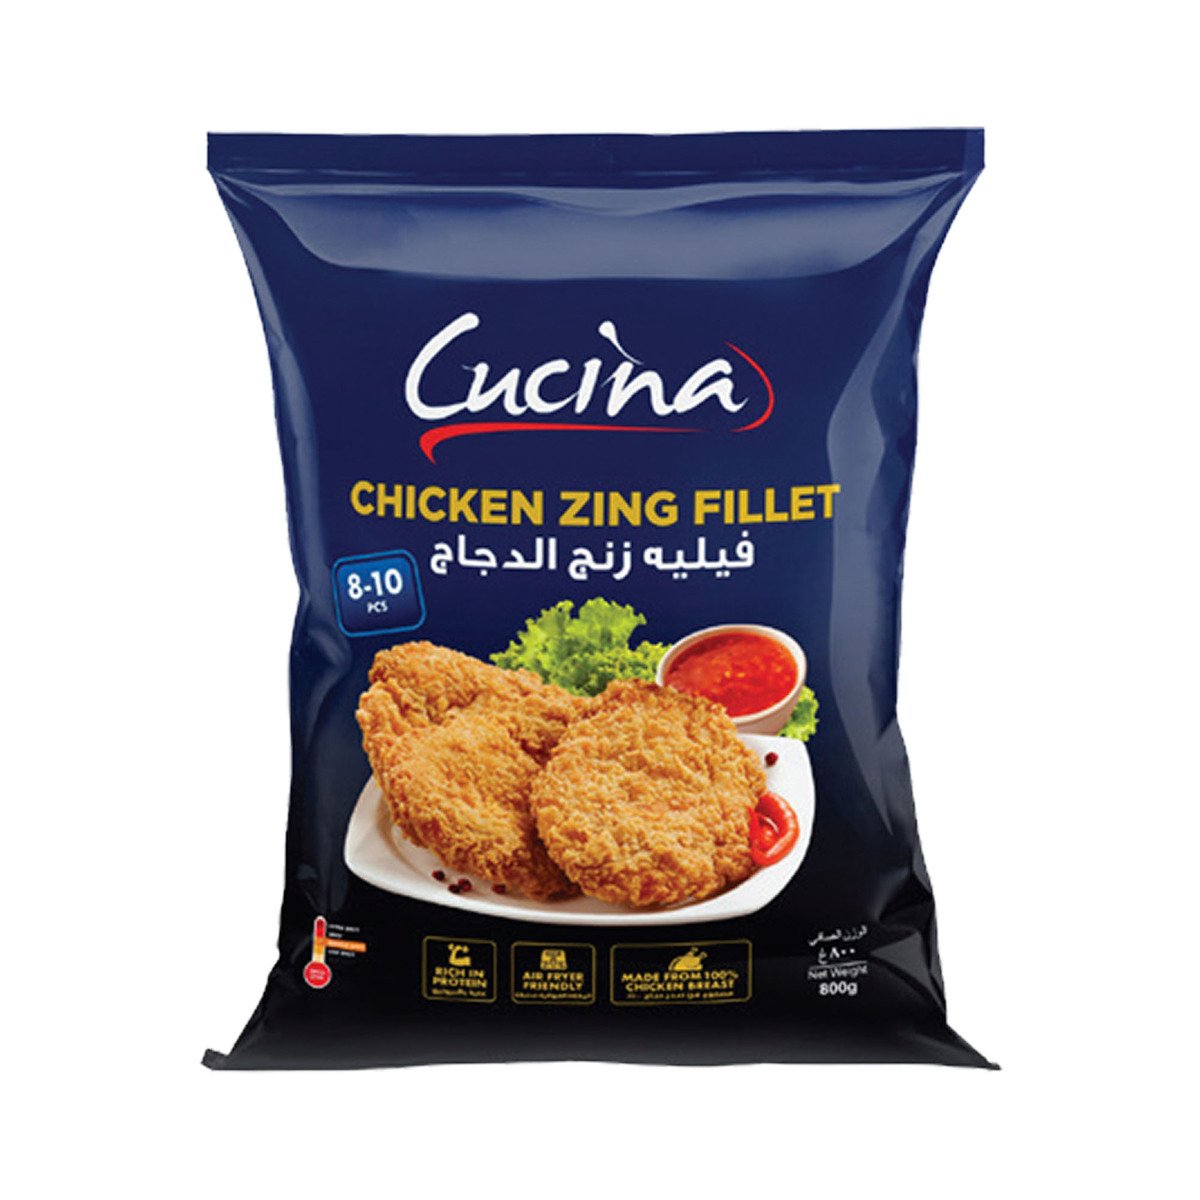 Buy Cucina Chicken Zing Fillet 800 g Online at Best Price | Zingers | Lulu UAE in UAE